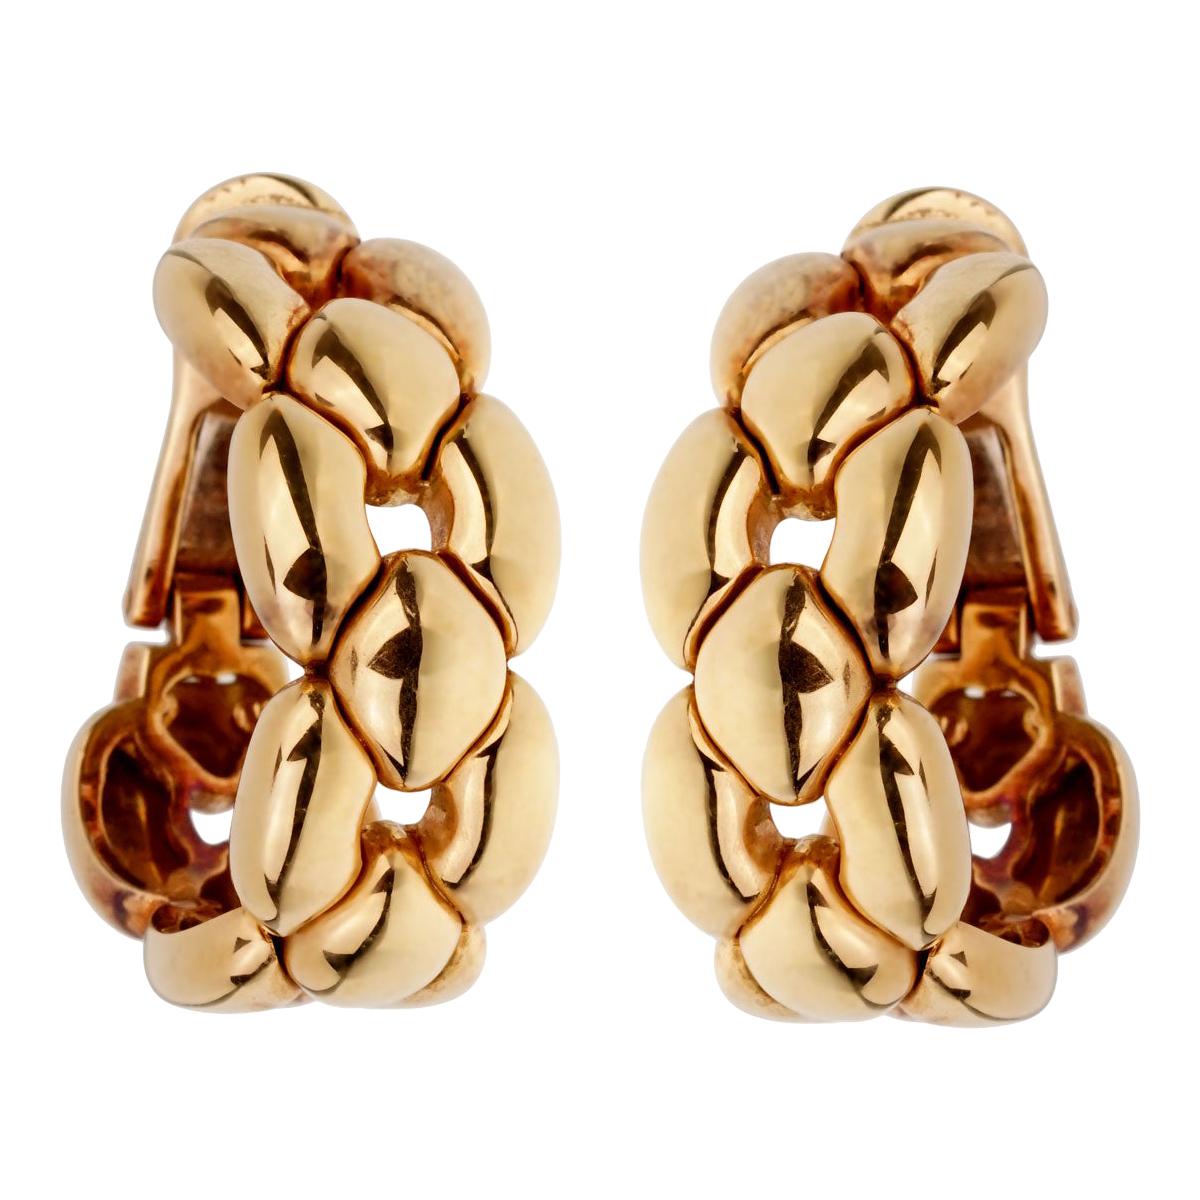 Ein prächtiges Set von Cartier-Ohrringen aus 18 Karat Gelbgold. Die Ohrringe messen 0,50